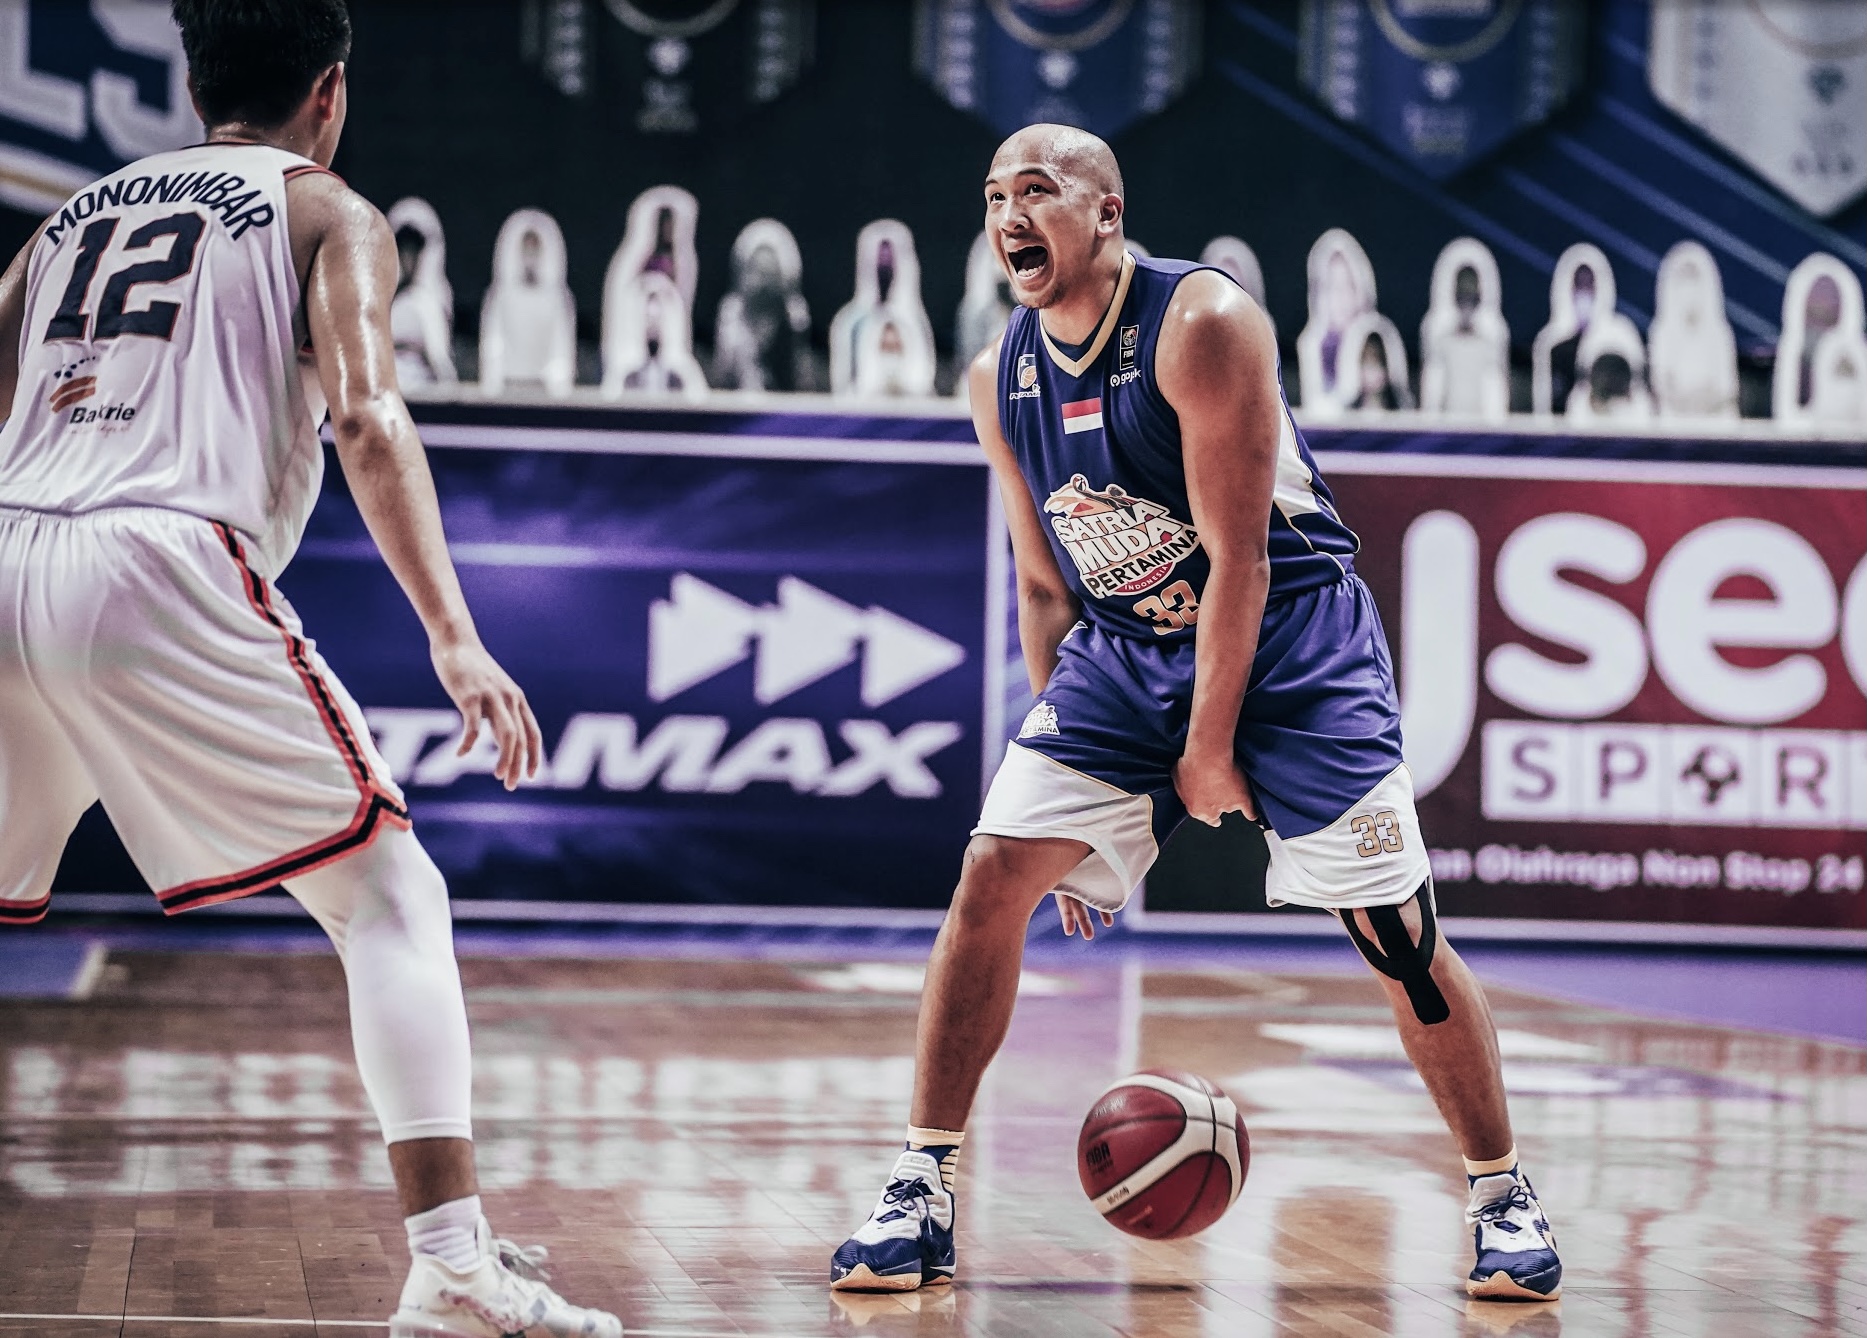 Kini Bintang Basket Indonesia, Arki Dikania Wisnu Sempat Tekuni Sepak Bola